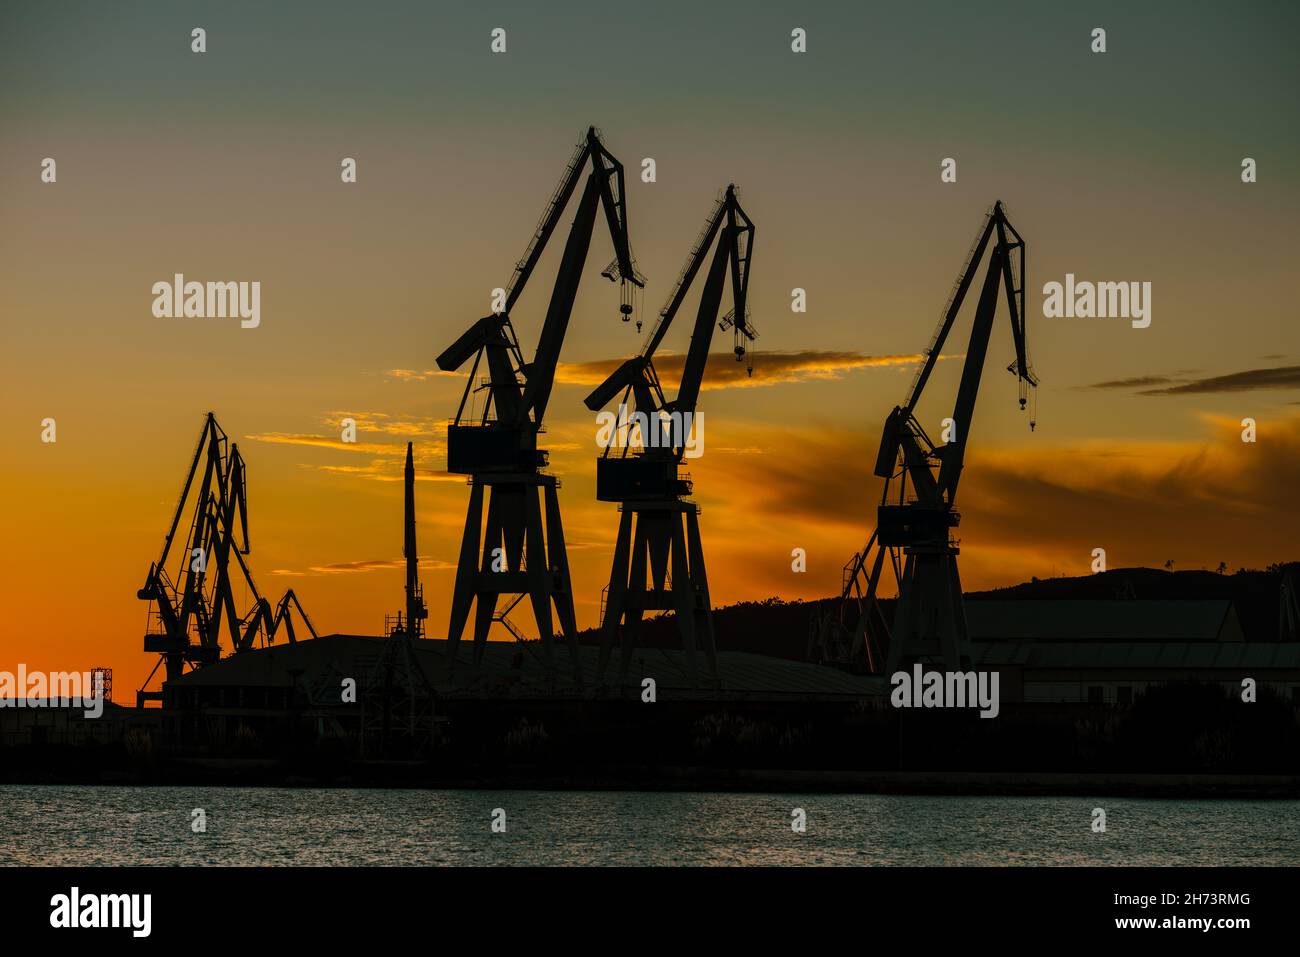 Grúas de los astilleros portuarios contra el cielo naranja Foto de stock